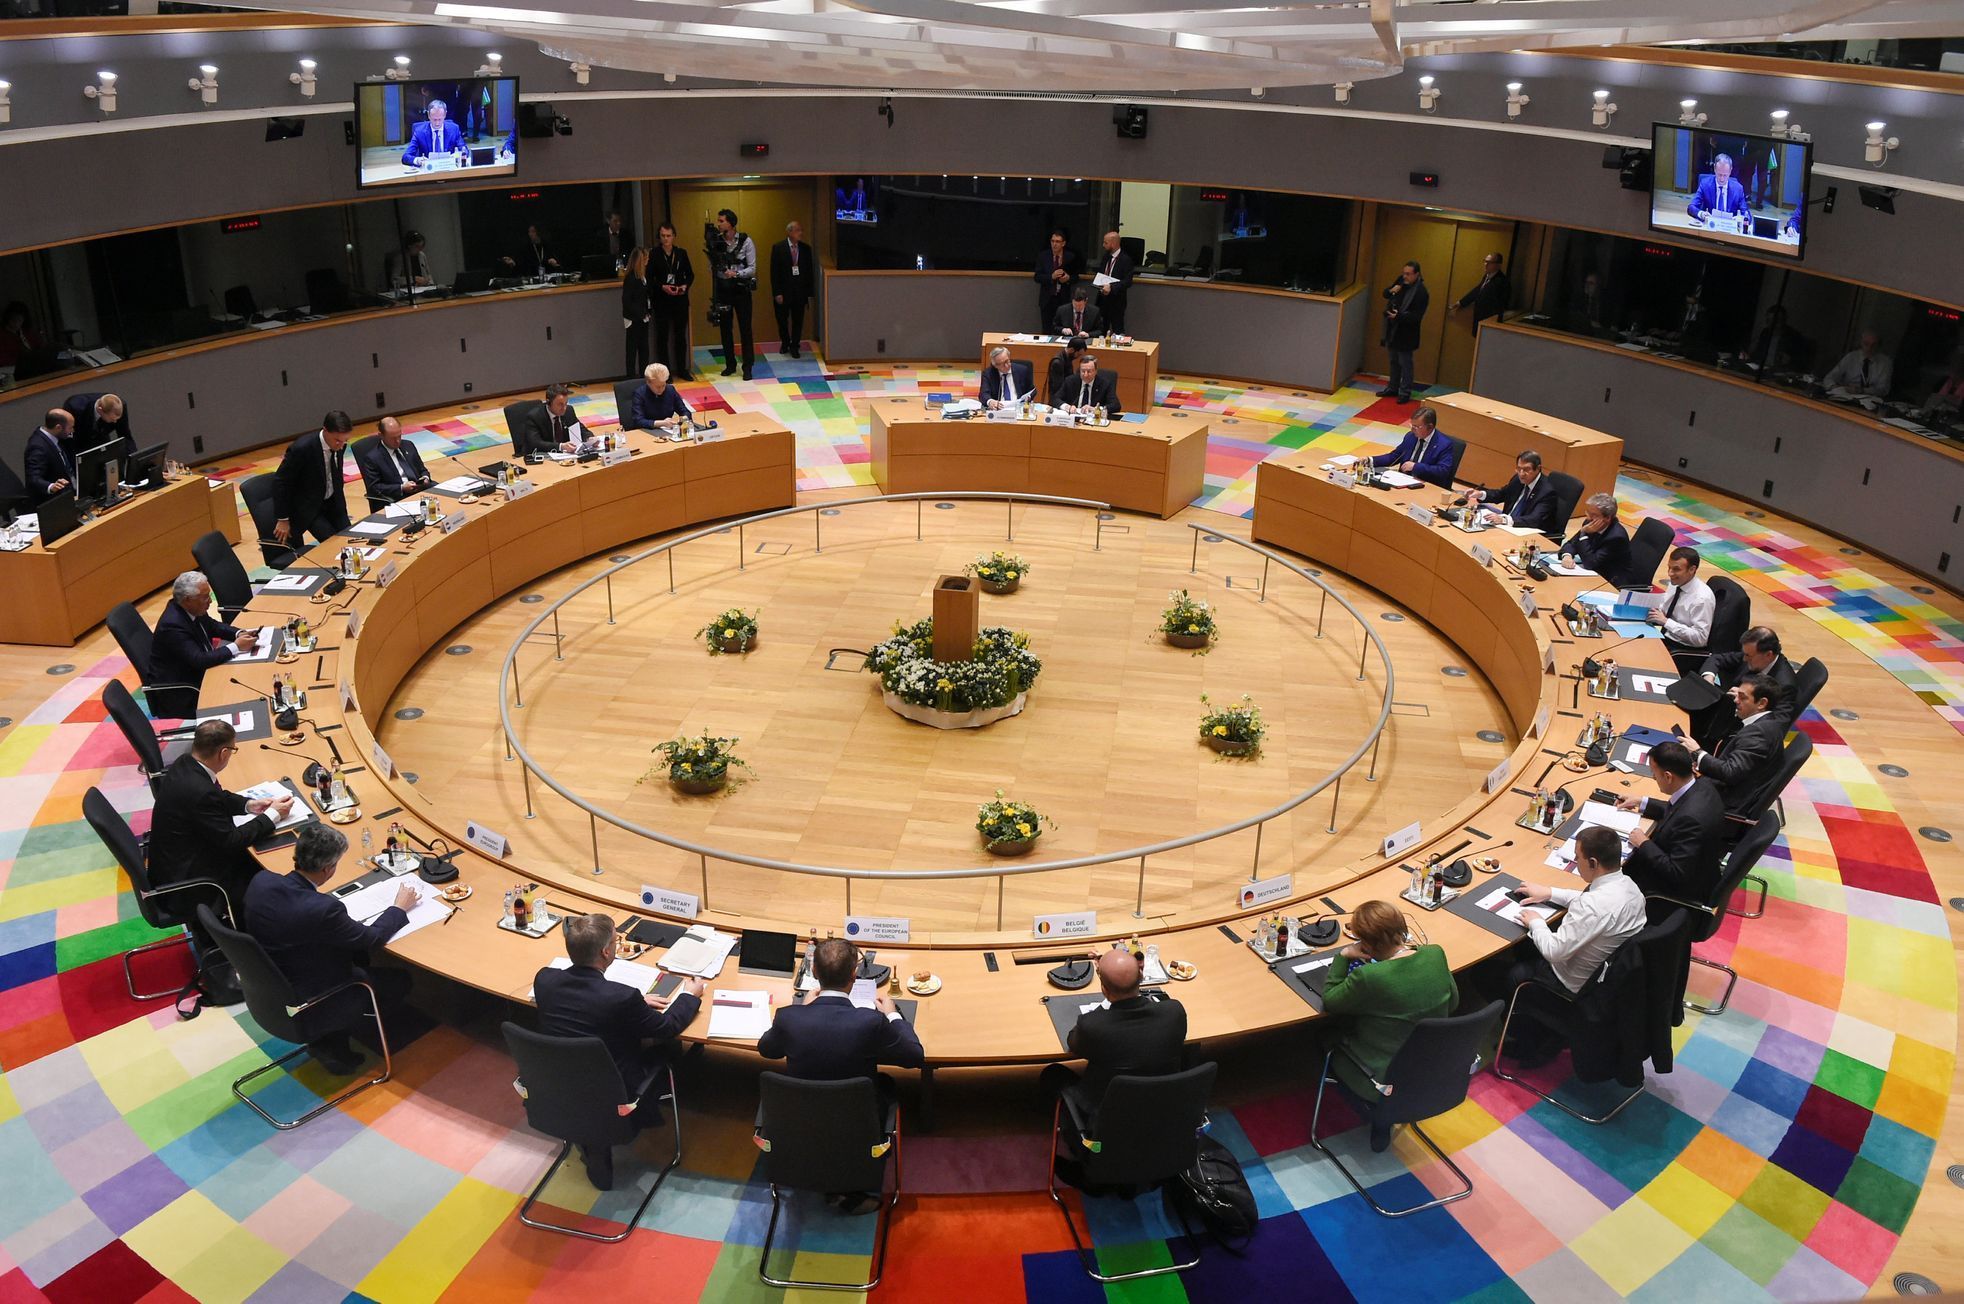 Summit EU v Bruselu